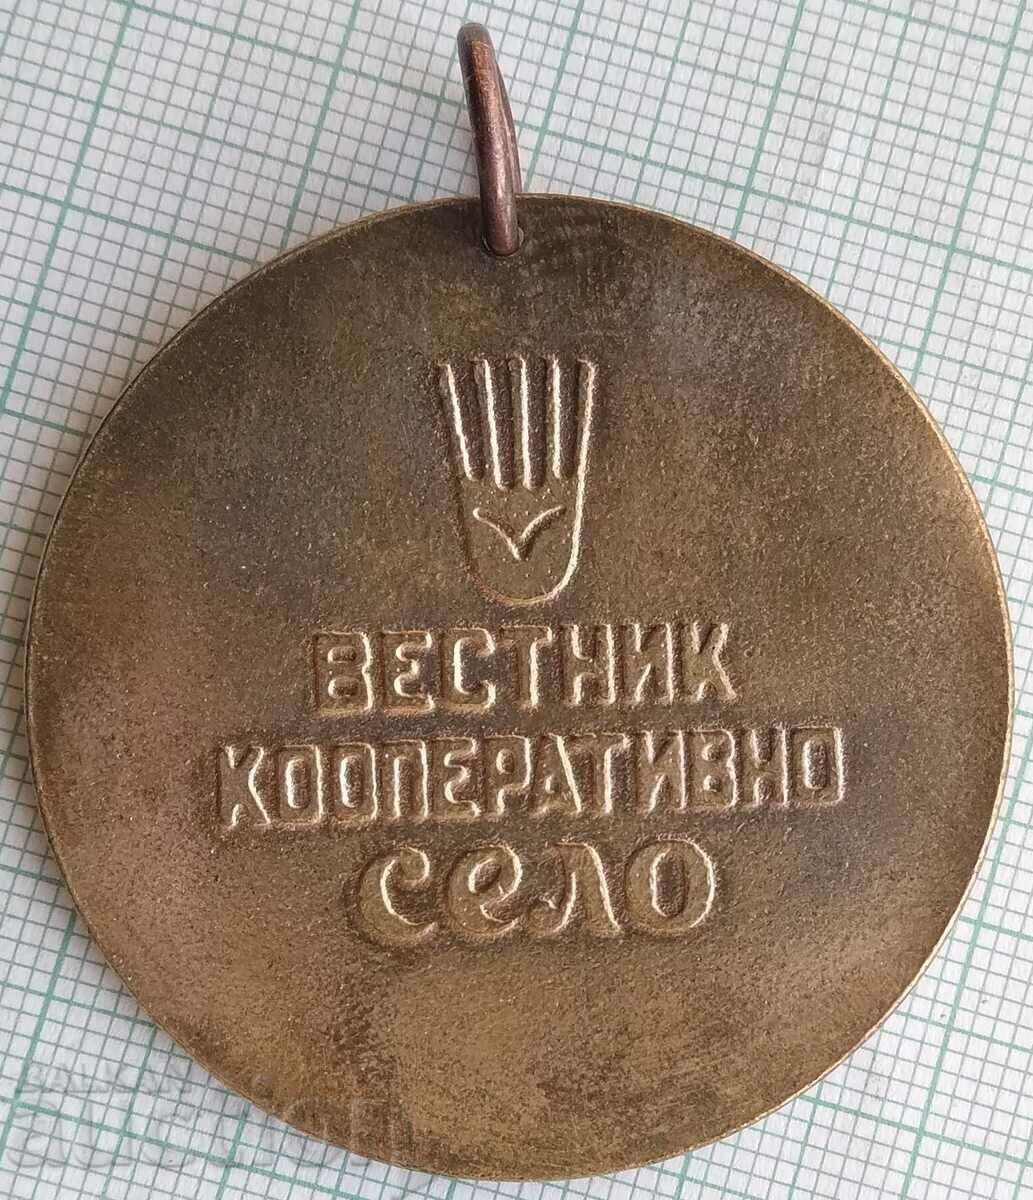 14974 Μετάλλιο Στίβου - Εφημερίδα Συνεταιριστικό Χωριό - 44 χλστ